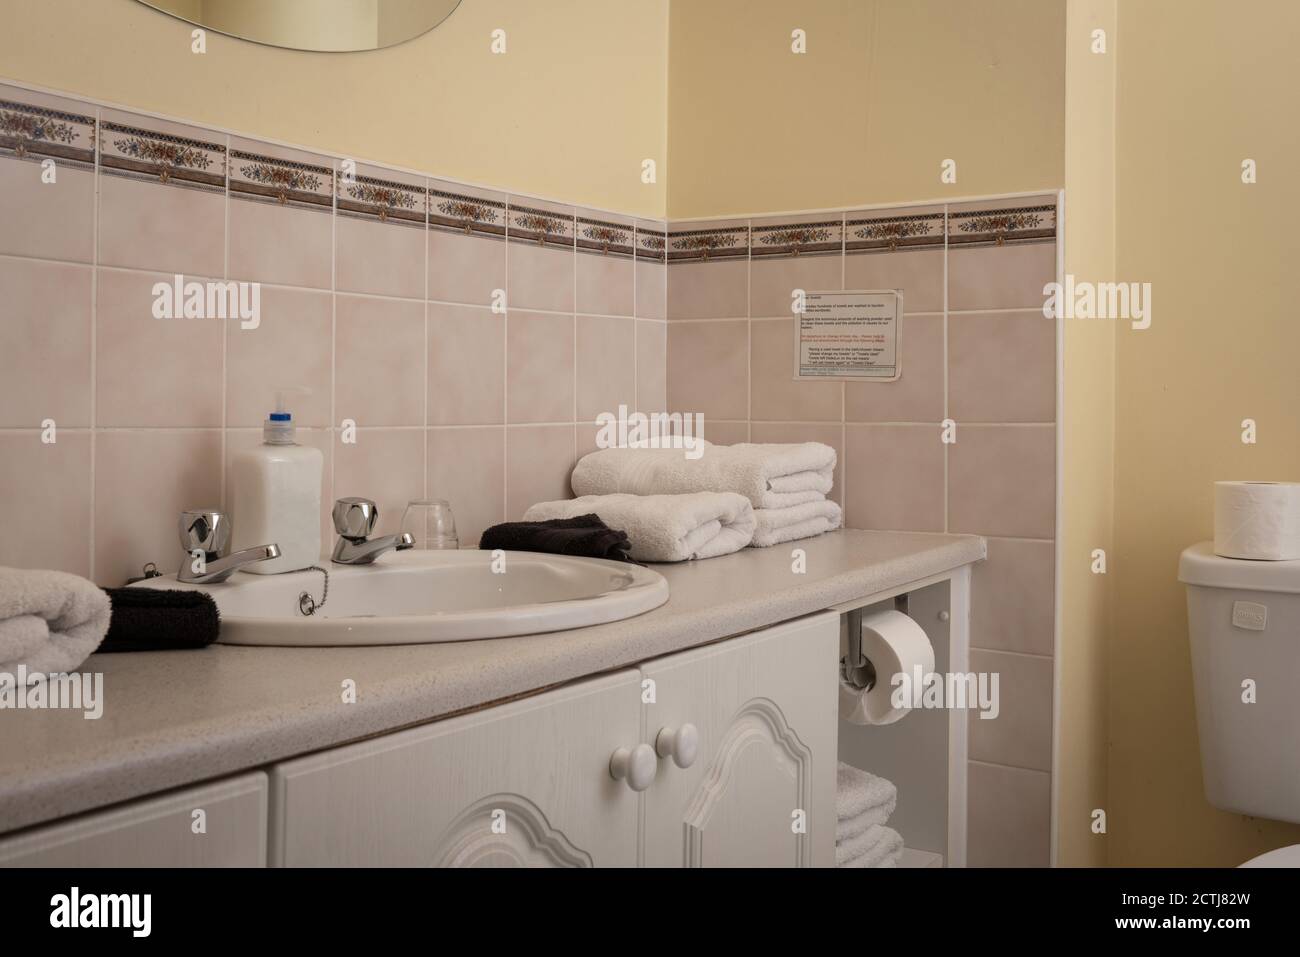 Intérieur typique de salle de bains avec des serviettes pliées dans les clients indépendants maison et appartement de chambres d'hôtes Banque D'Images